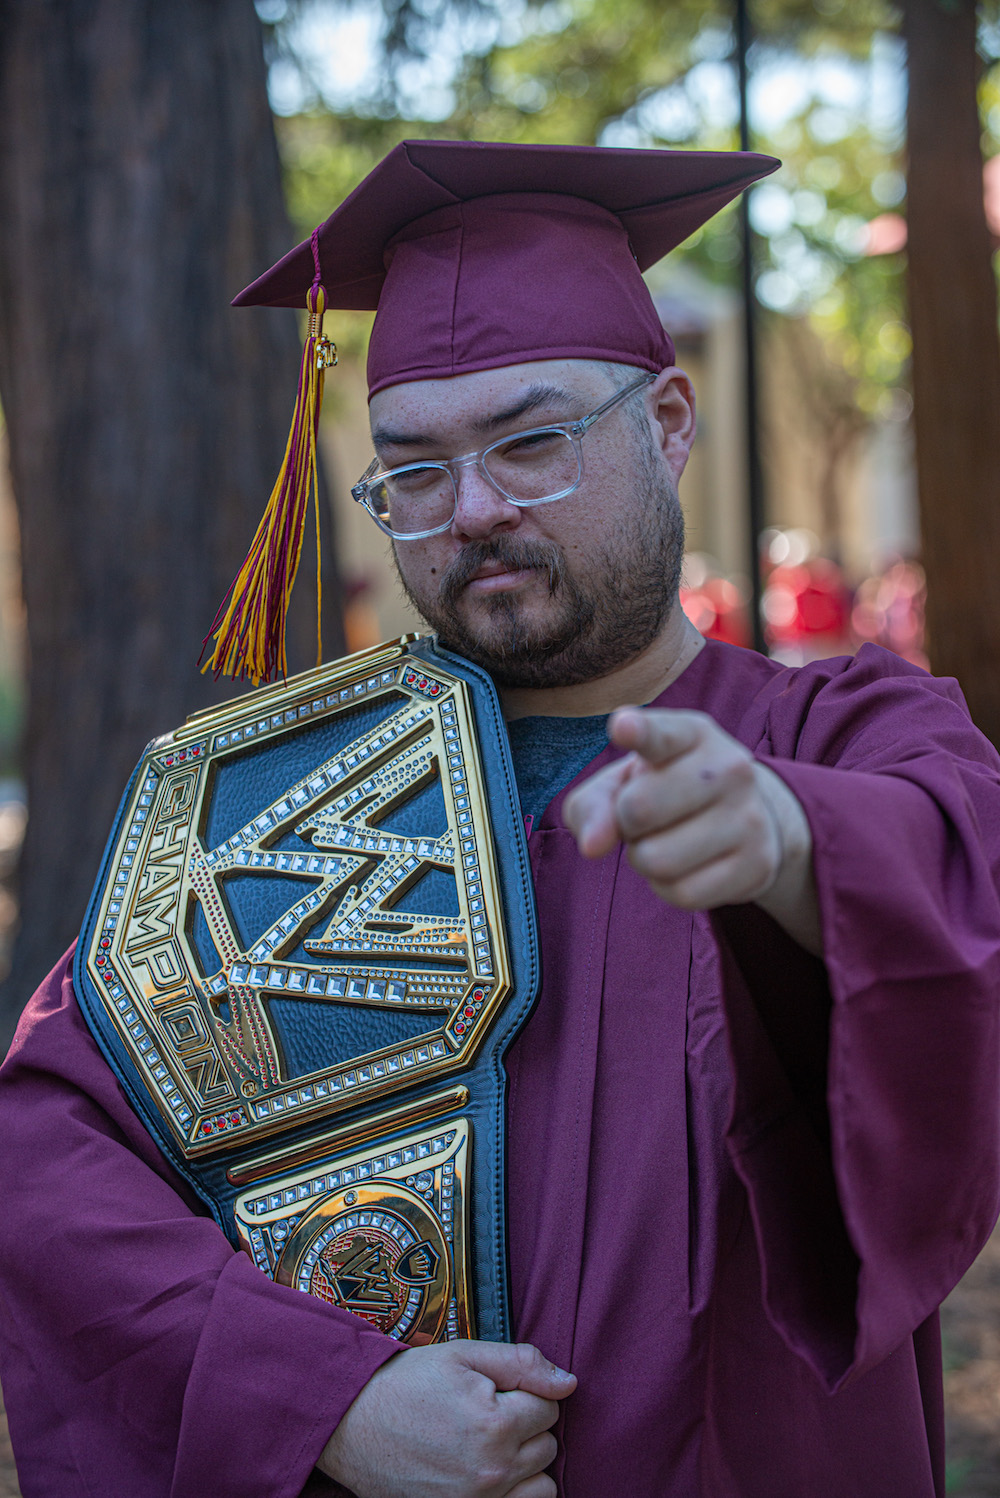 grad with champion belt